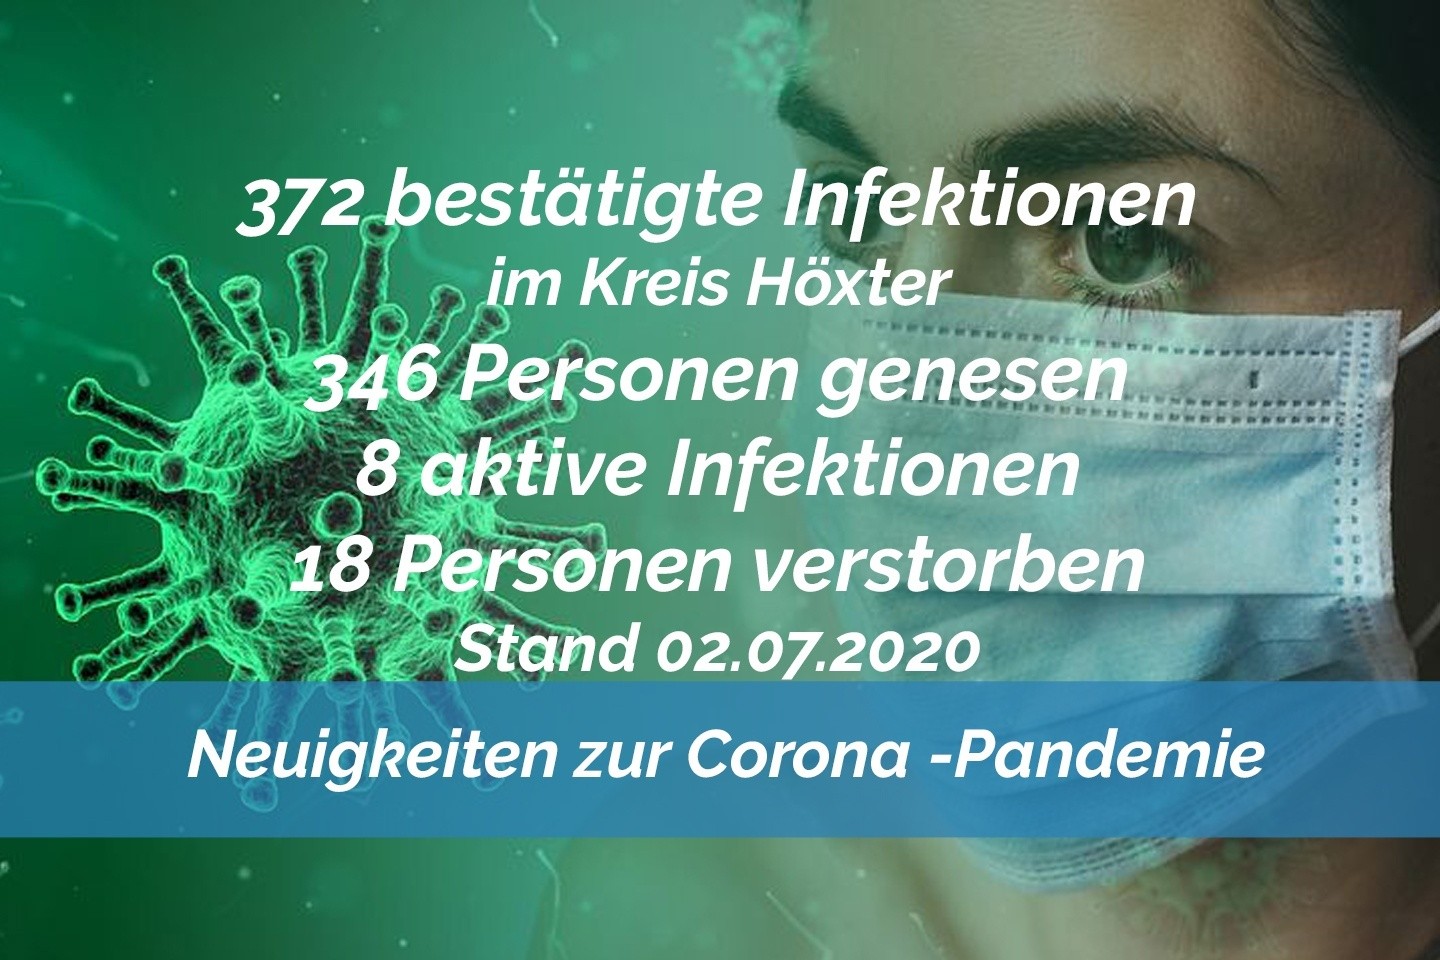 Update vom 02. Juli: 372 bestätigte Infektionen mit dem neuen Coronavirus im Kreis Höxter